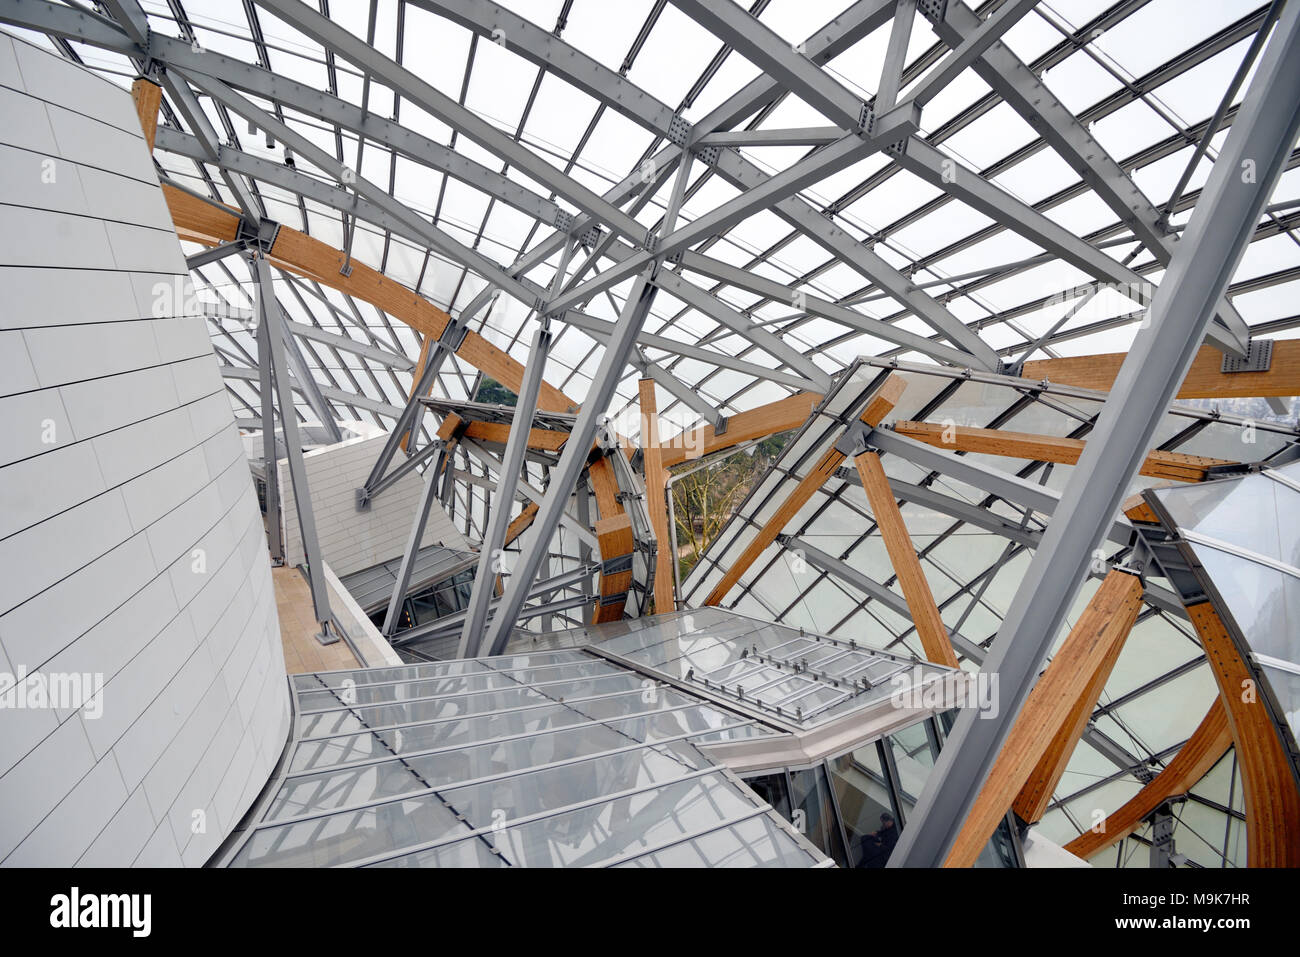 Structure du toit de la fondation Louis Vuitton Art Museum & Cultural Center (2006-14) conçu par Frank Gehry, Paris, France Banque D'Images